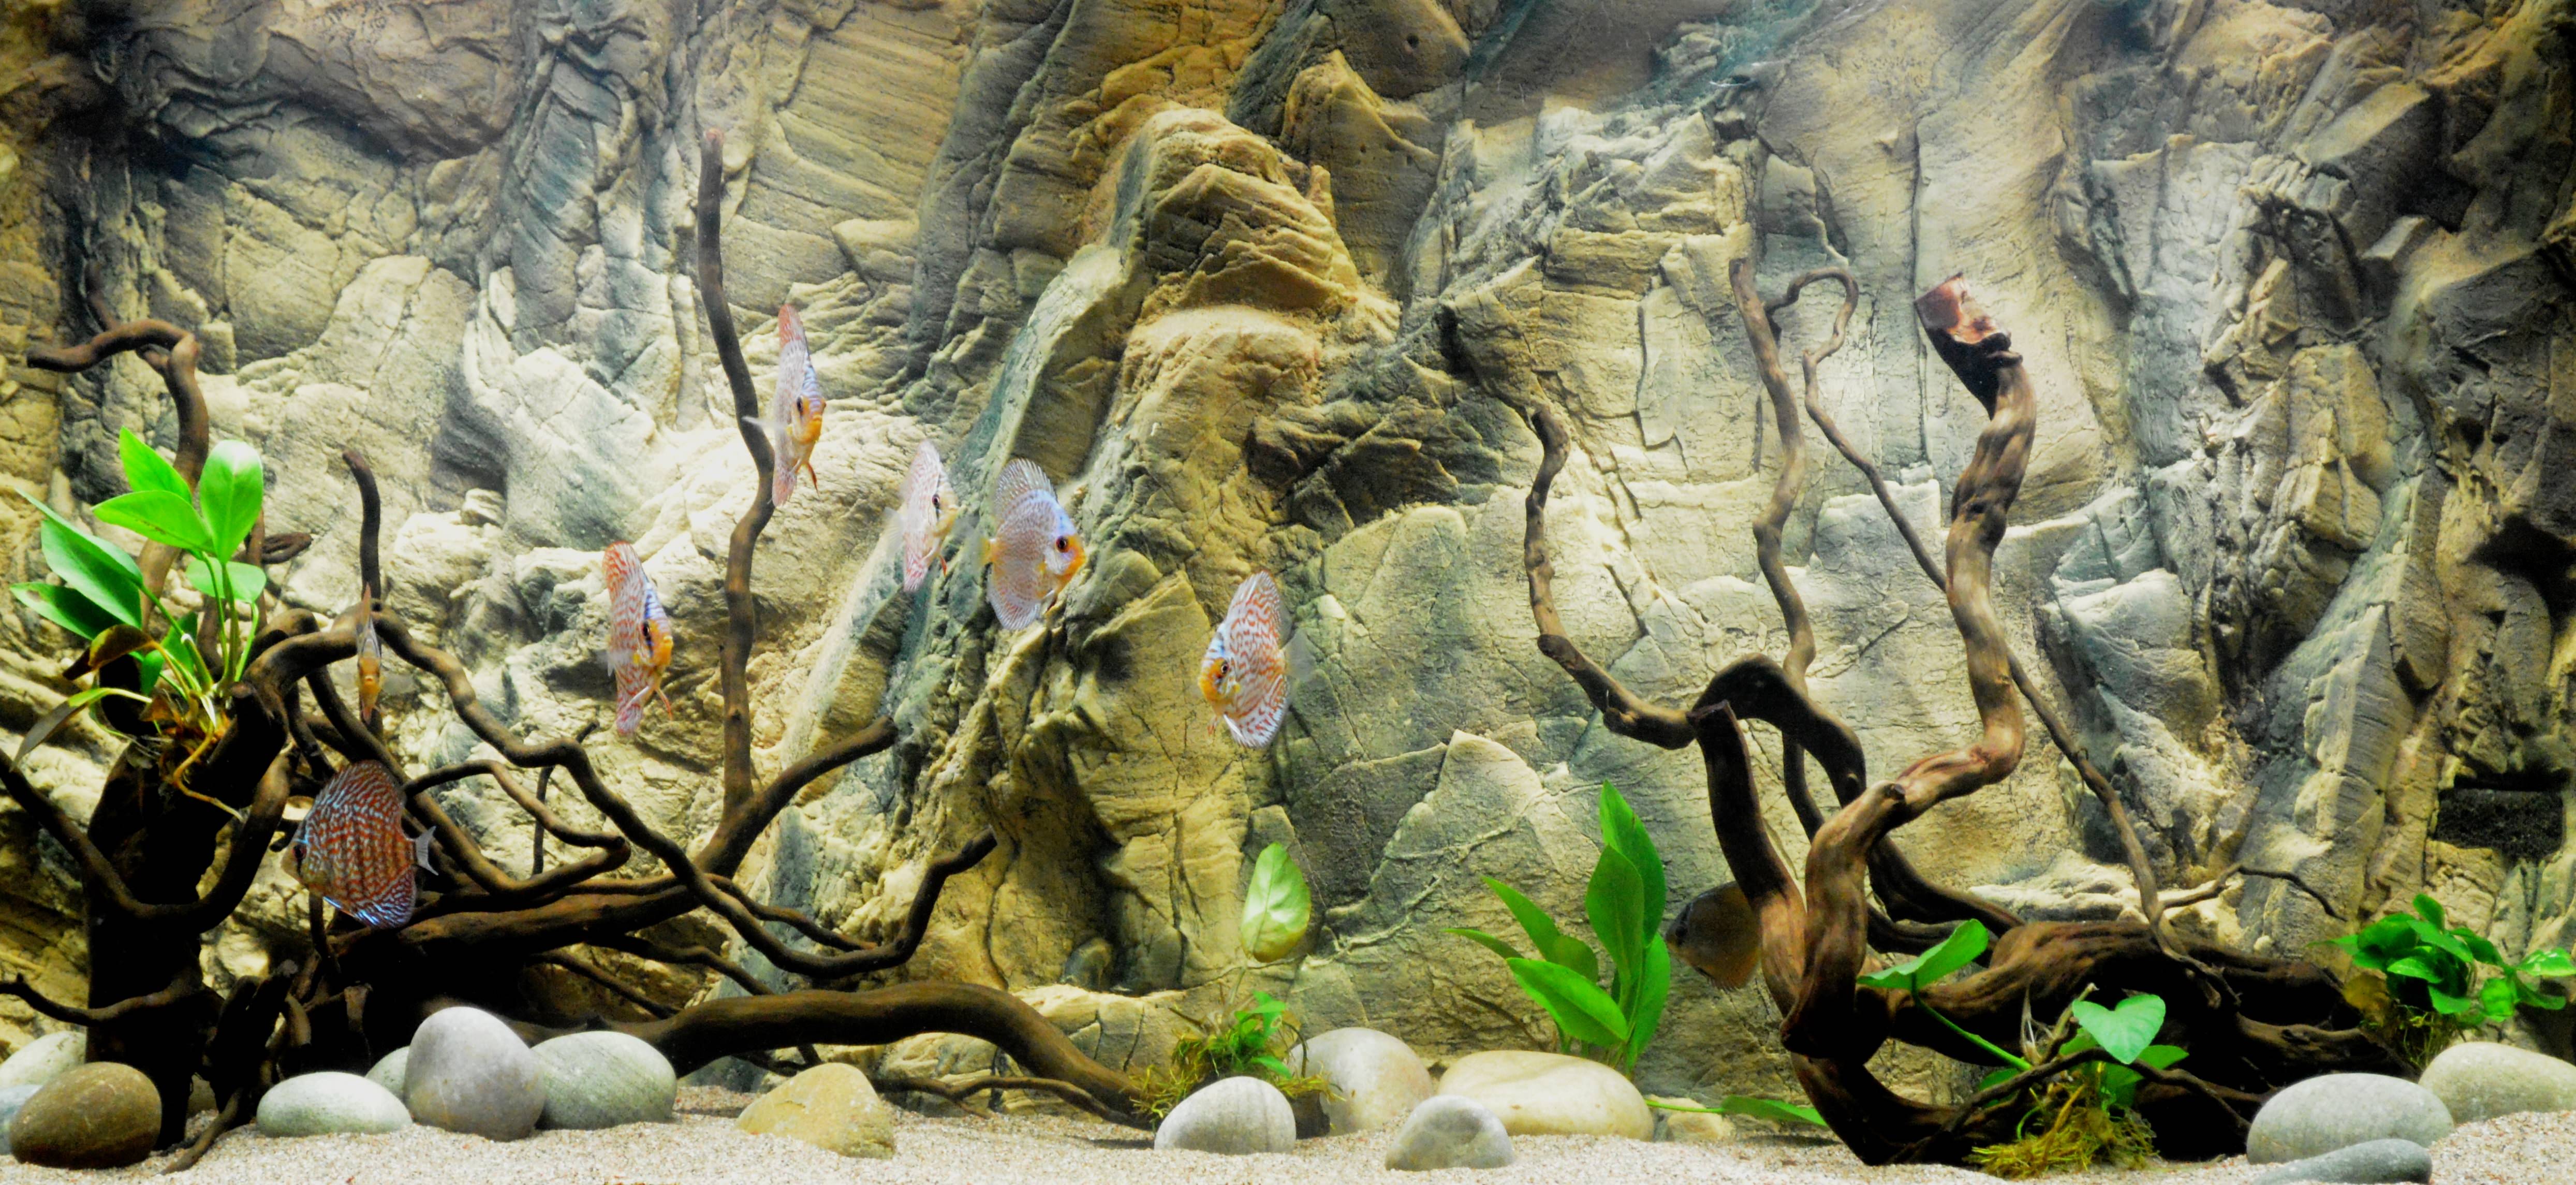 Aquarium Background 3d Wallpaper Image Num 7